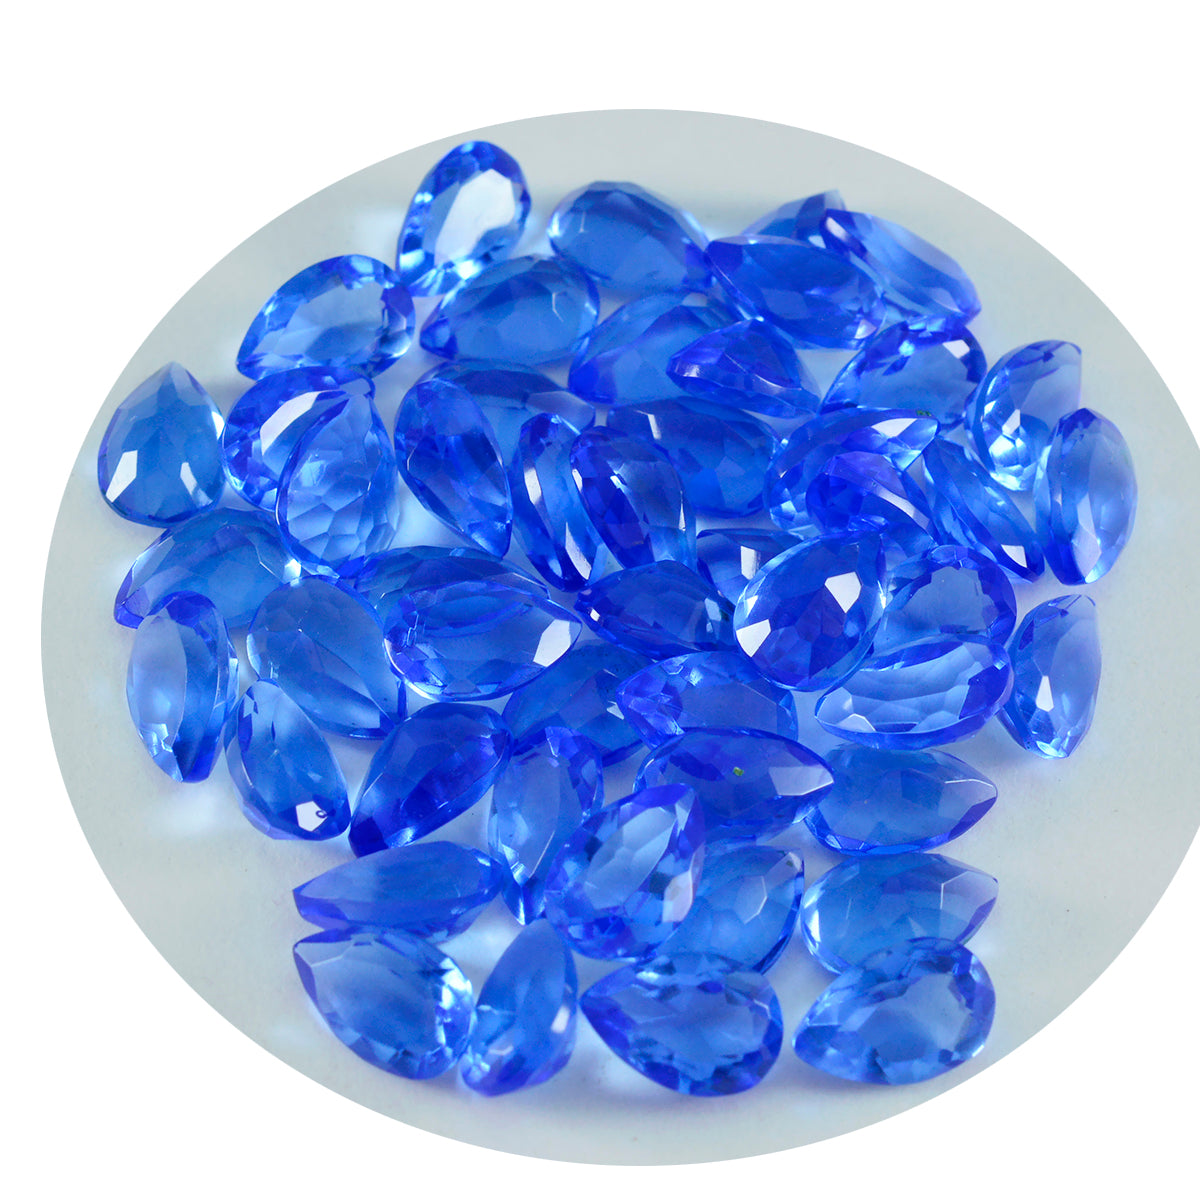 Riyogems 1pc saphir bleu cz facettes 5x7mm forme de poire belles pierres précieuses de qualité